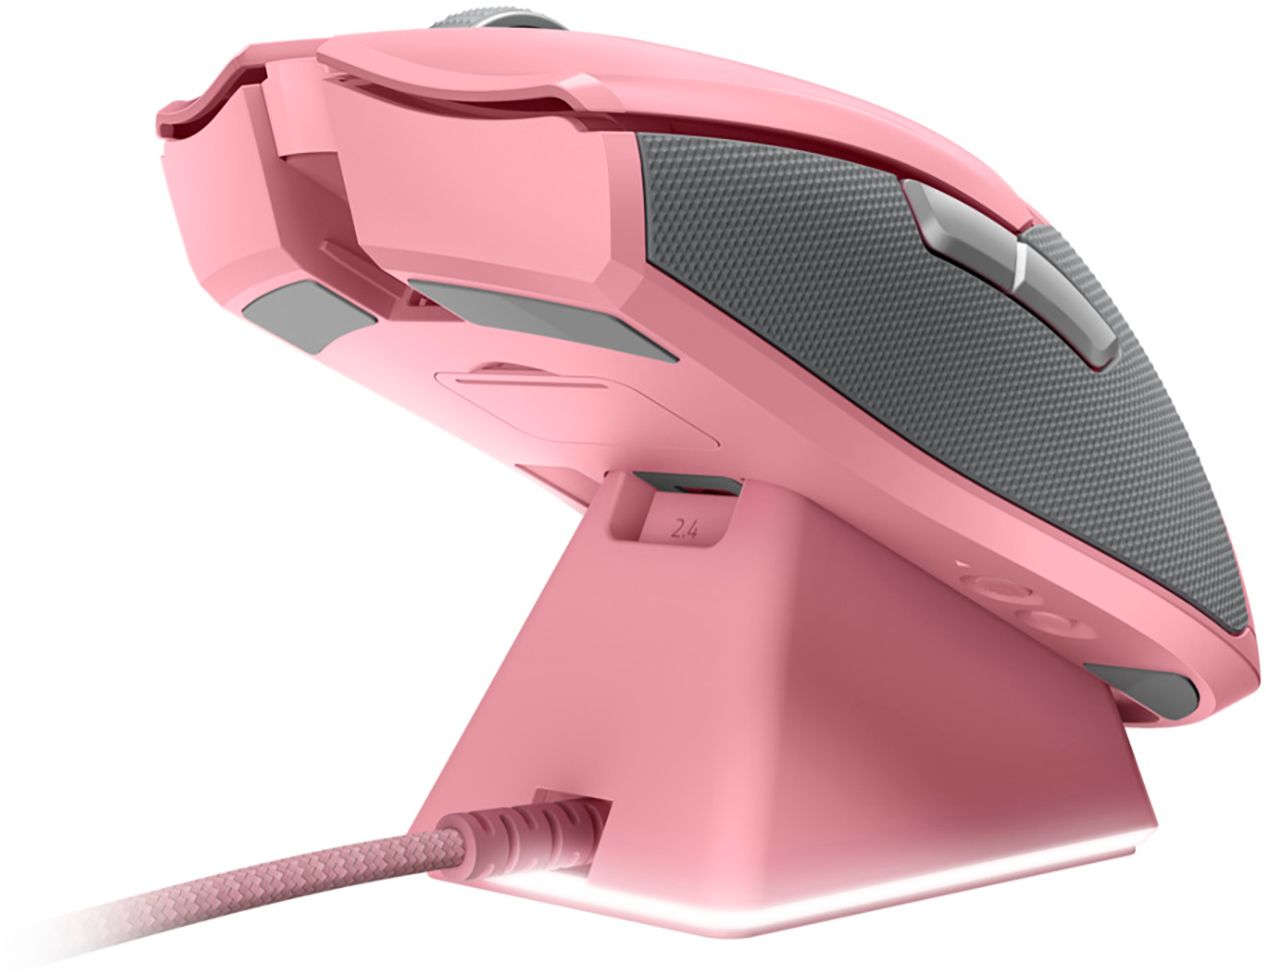 Ultraleicht, beidhändig, Speedflex-Kabel, optischer Fokus+ Sensor, Chroma RGB Beleuchtung Quartz Razer Viper Ultimate Pink mit Ladestation Kabellose Gaming Maus mit nur 74g Gewicht für PC / Mac 